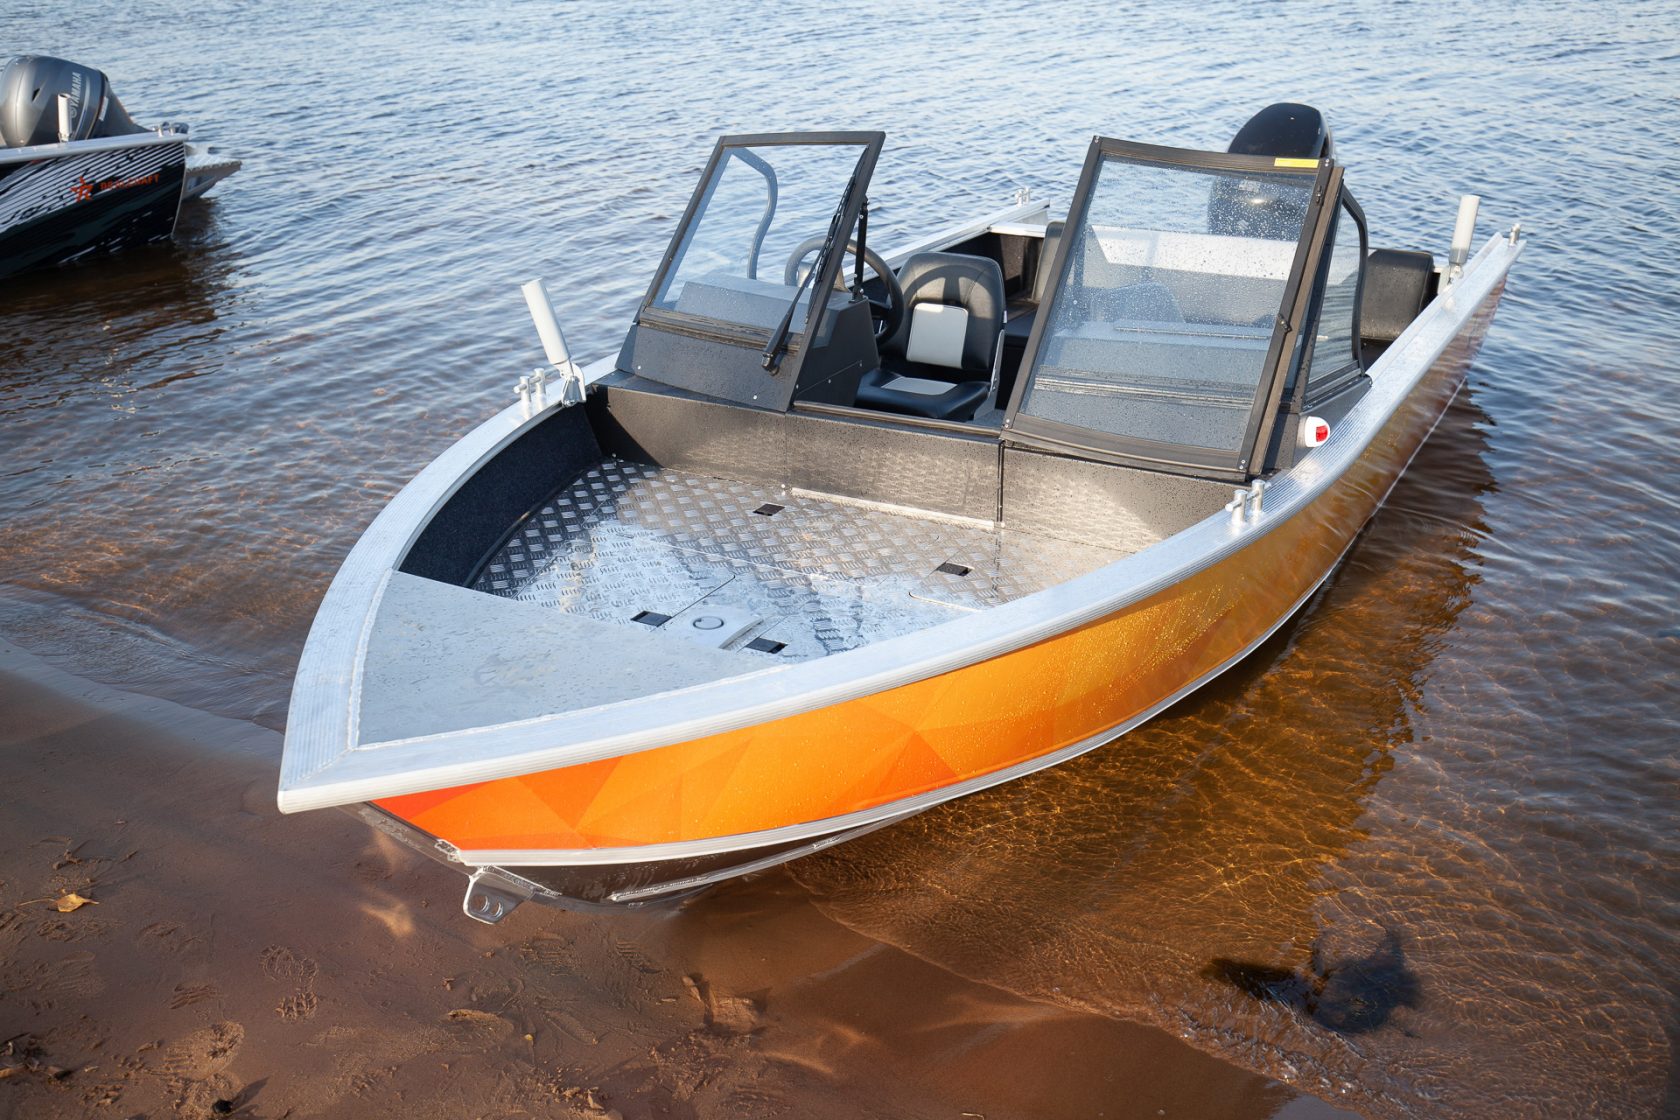 Лодка алюминиевая Realcraft 500 (Откр. Нос. кокпит + спал. места)